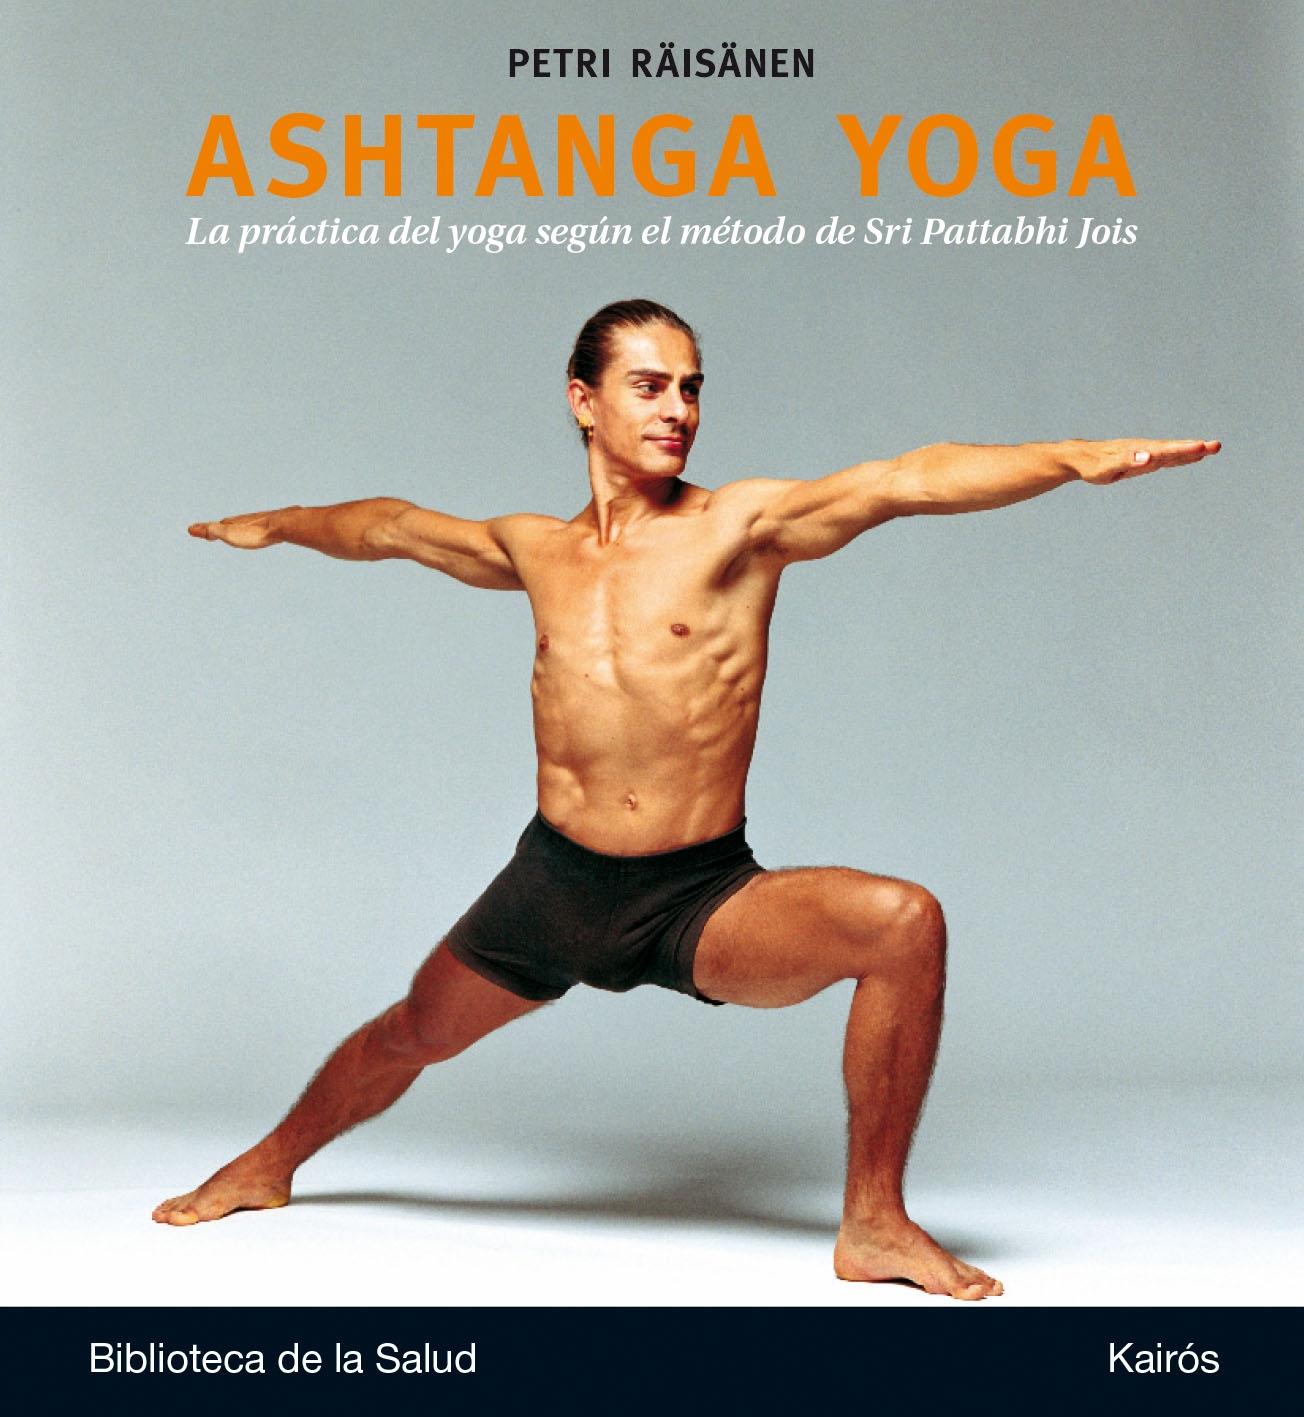 Ashtanga Yoga "La práctica del yoga según el método de Sri Patta". 